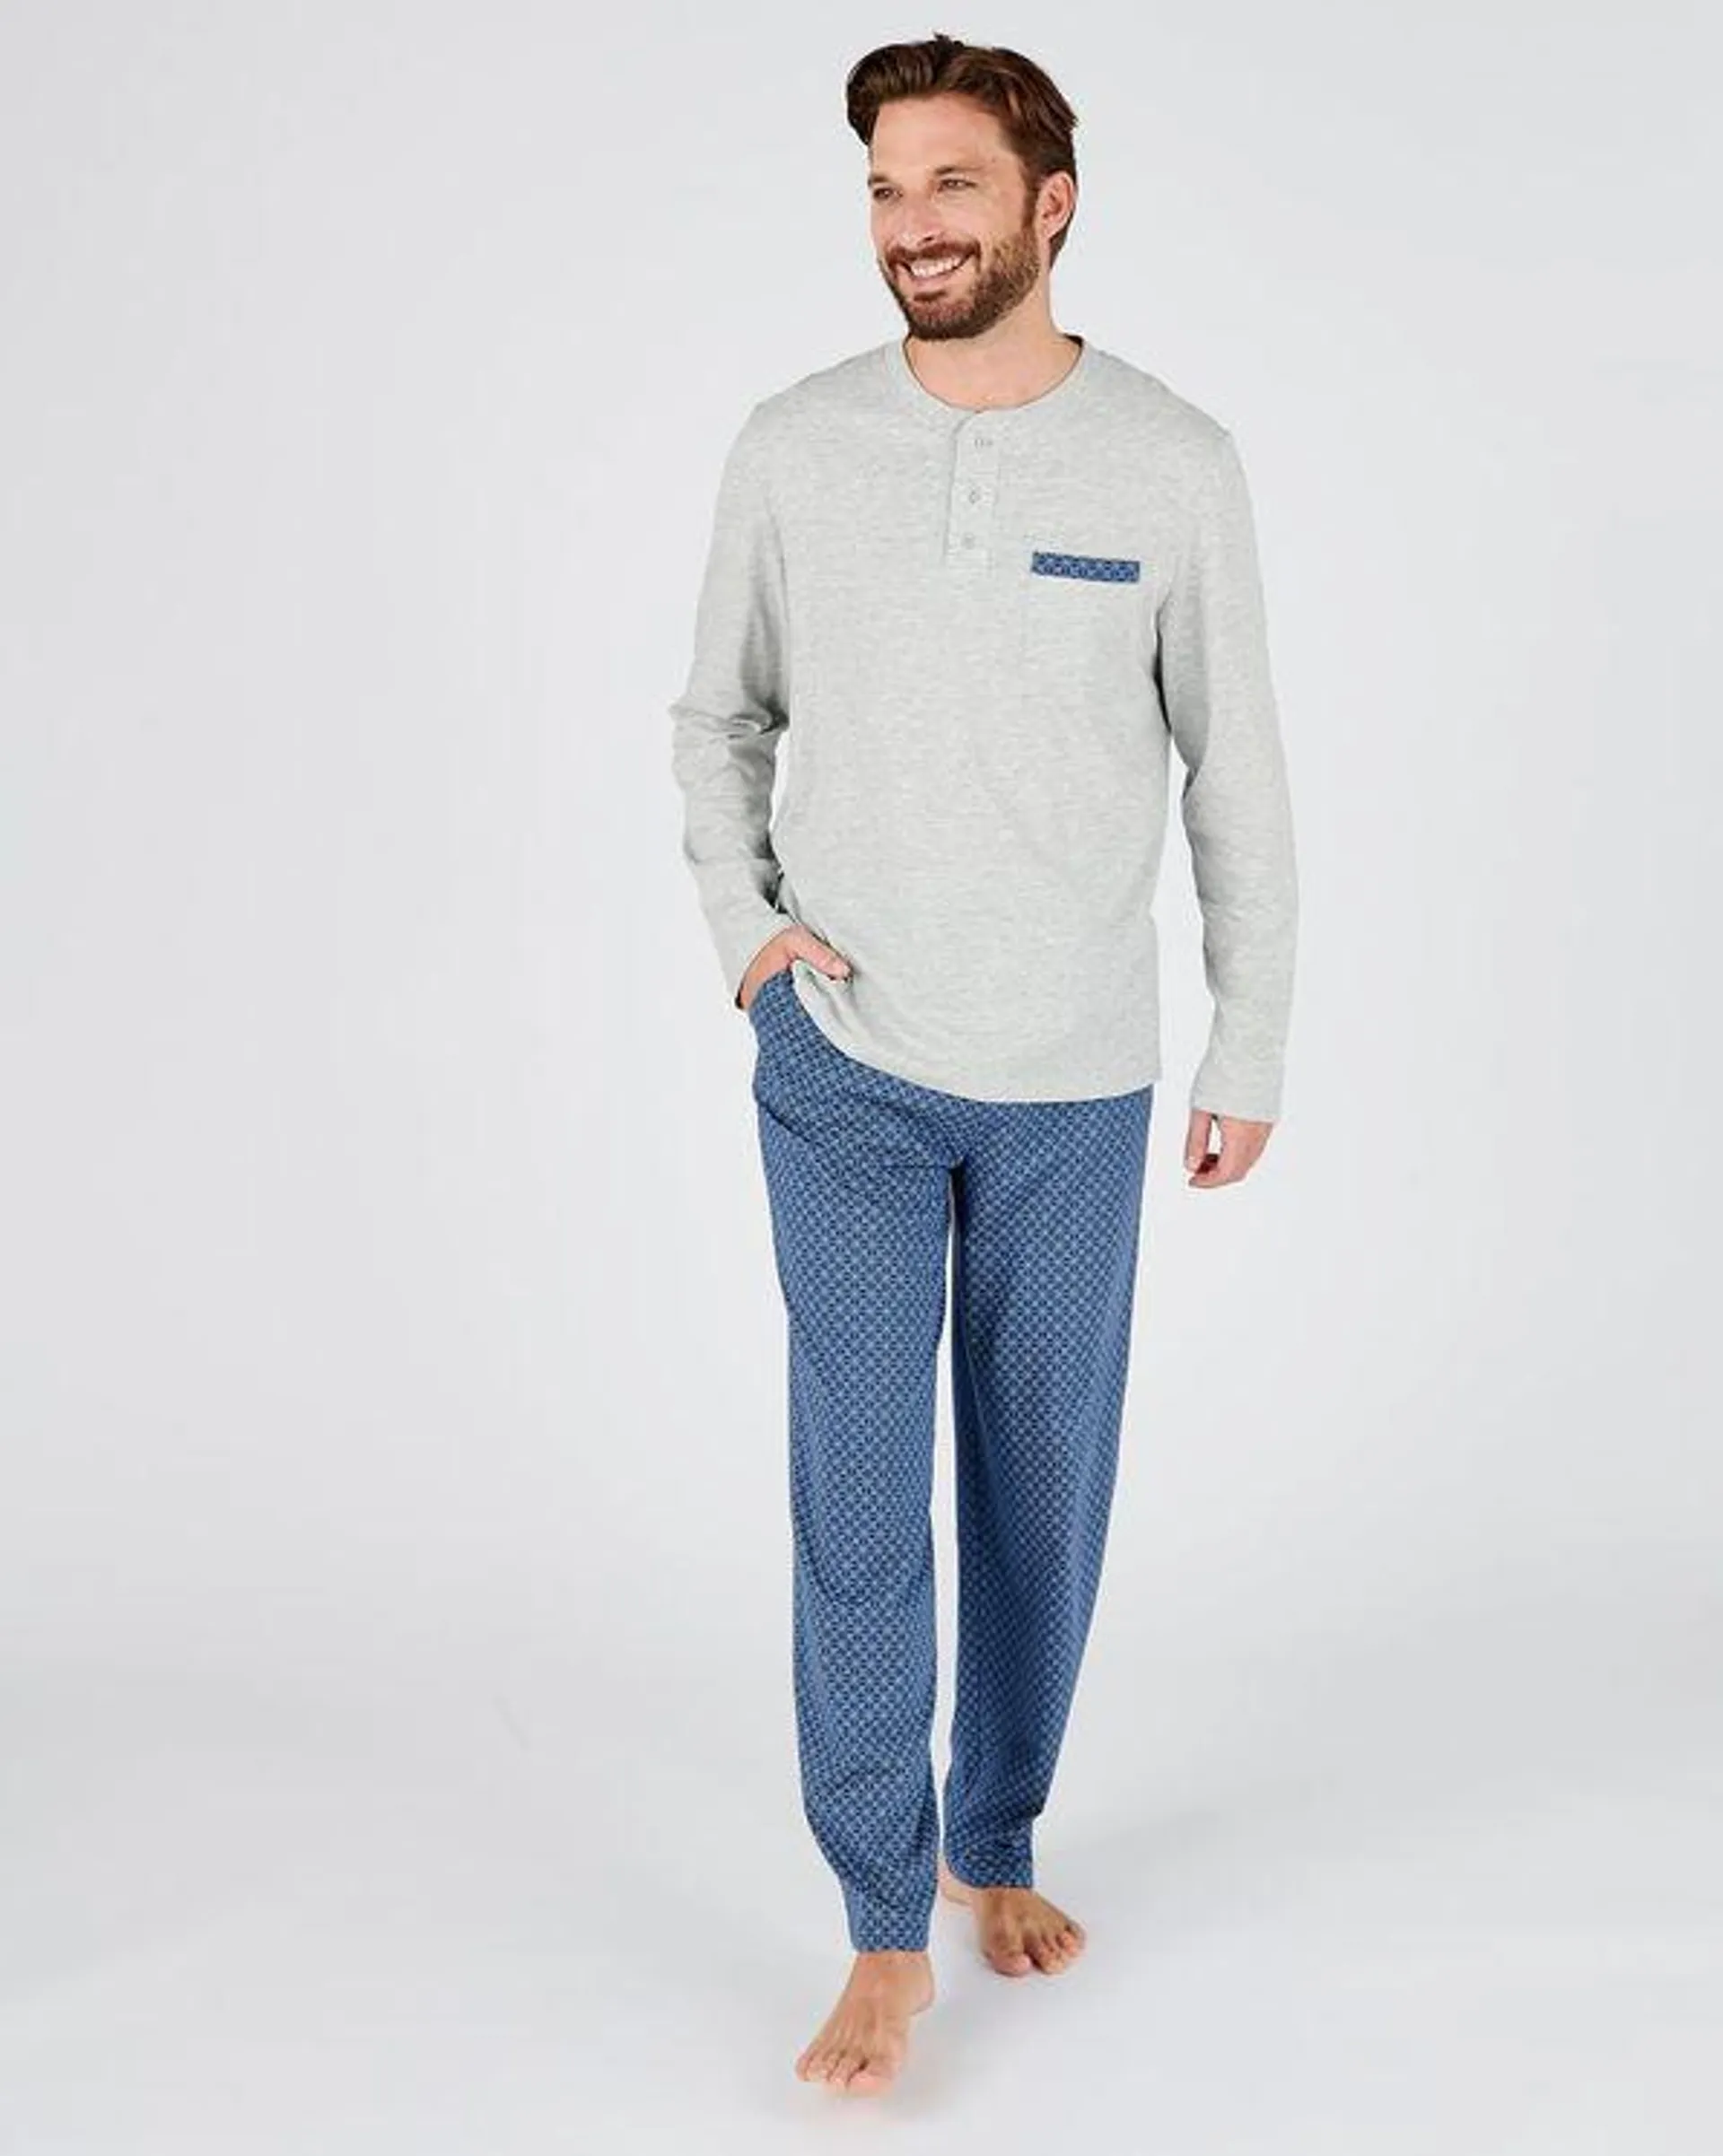 Pyjama in jersey met geometrische print, kamkatoen